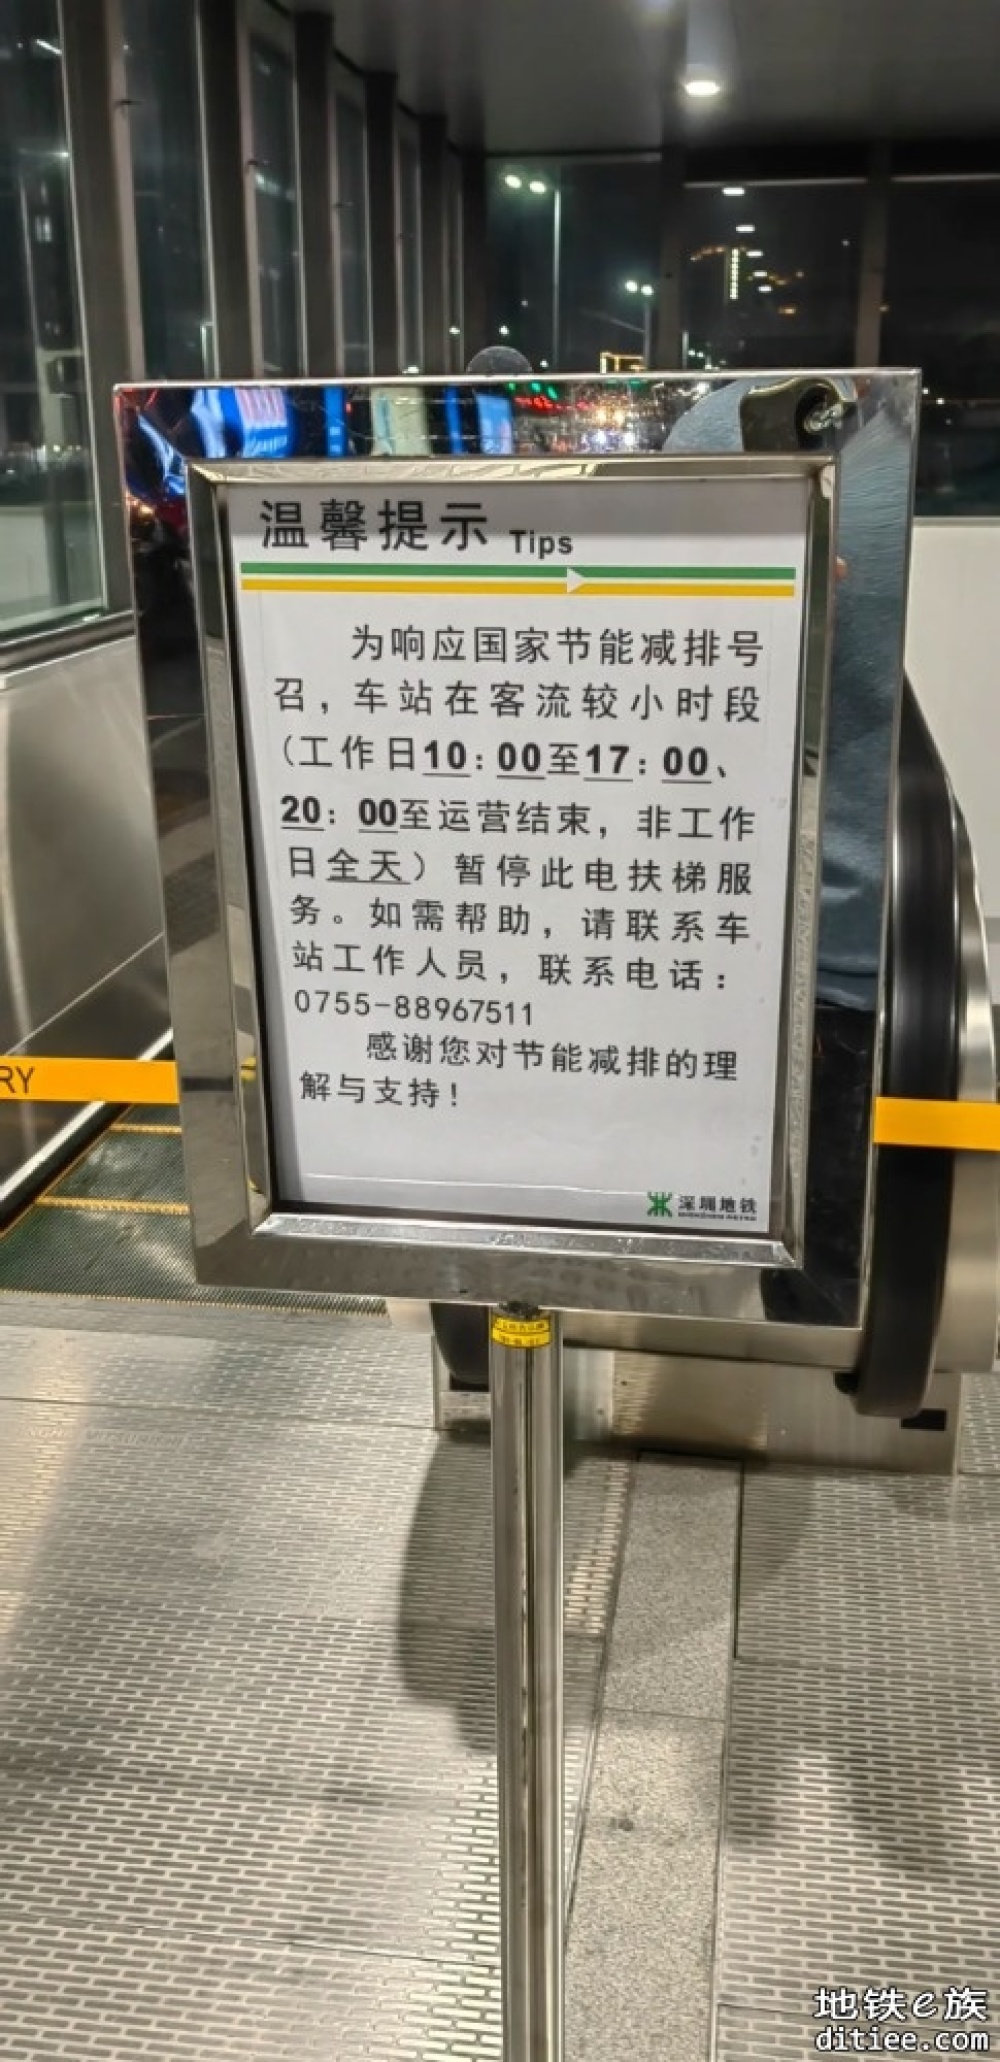 恭喜深圳地铁当起了节能减排的排头兵